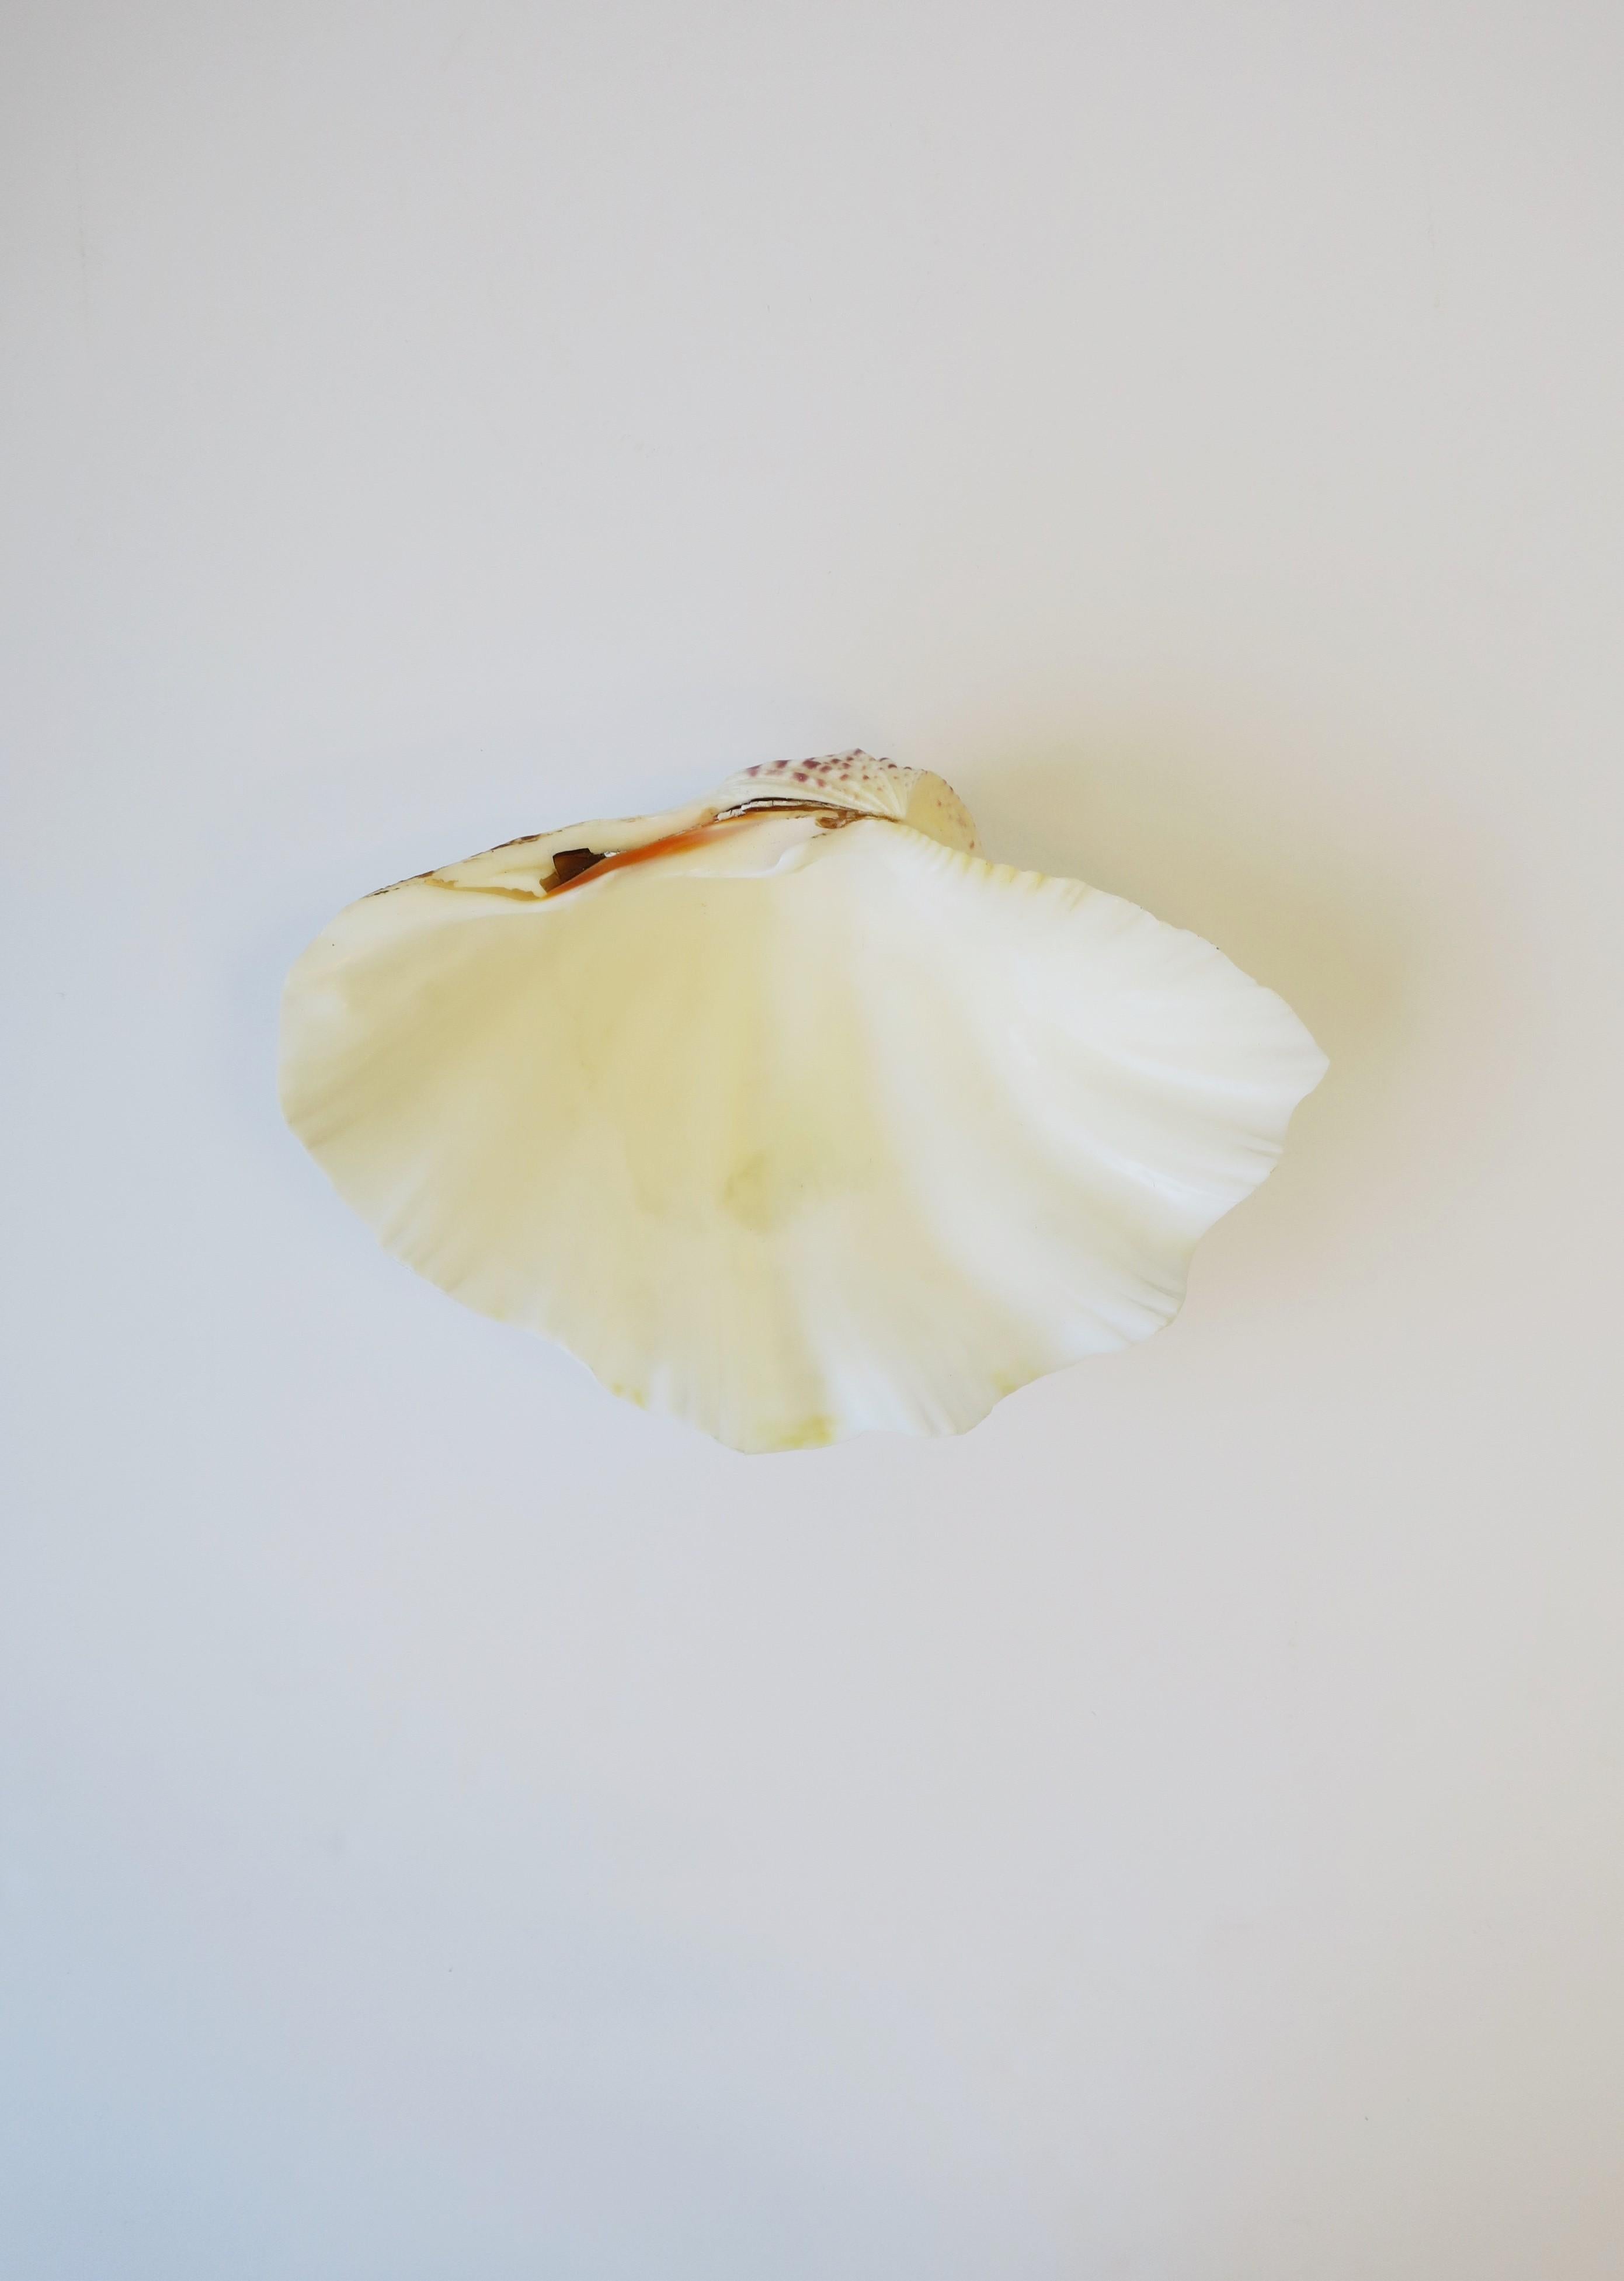 Eine schöne, relativ große, weiße, natürliche Muschelschale. Die Muschel ist echt. Schön als Einzelstück oder gefüllt mit Ihrem Lieblingsobst, -gemüse etc. Muschel Maße: 3,75